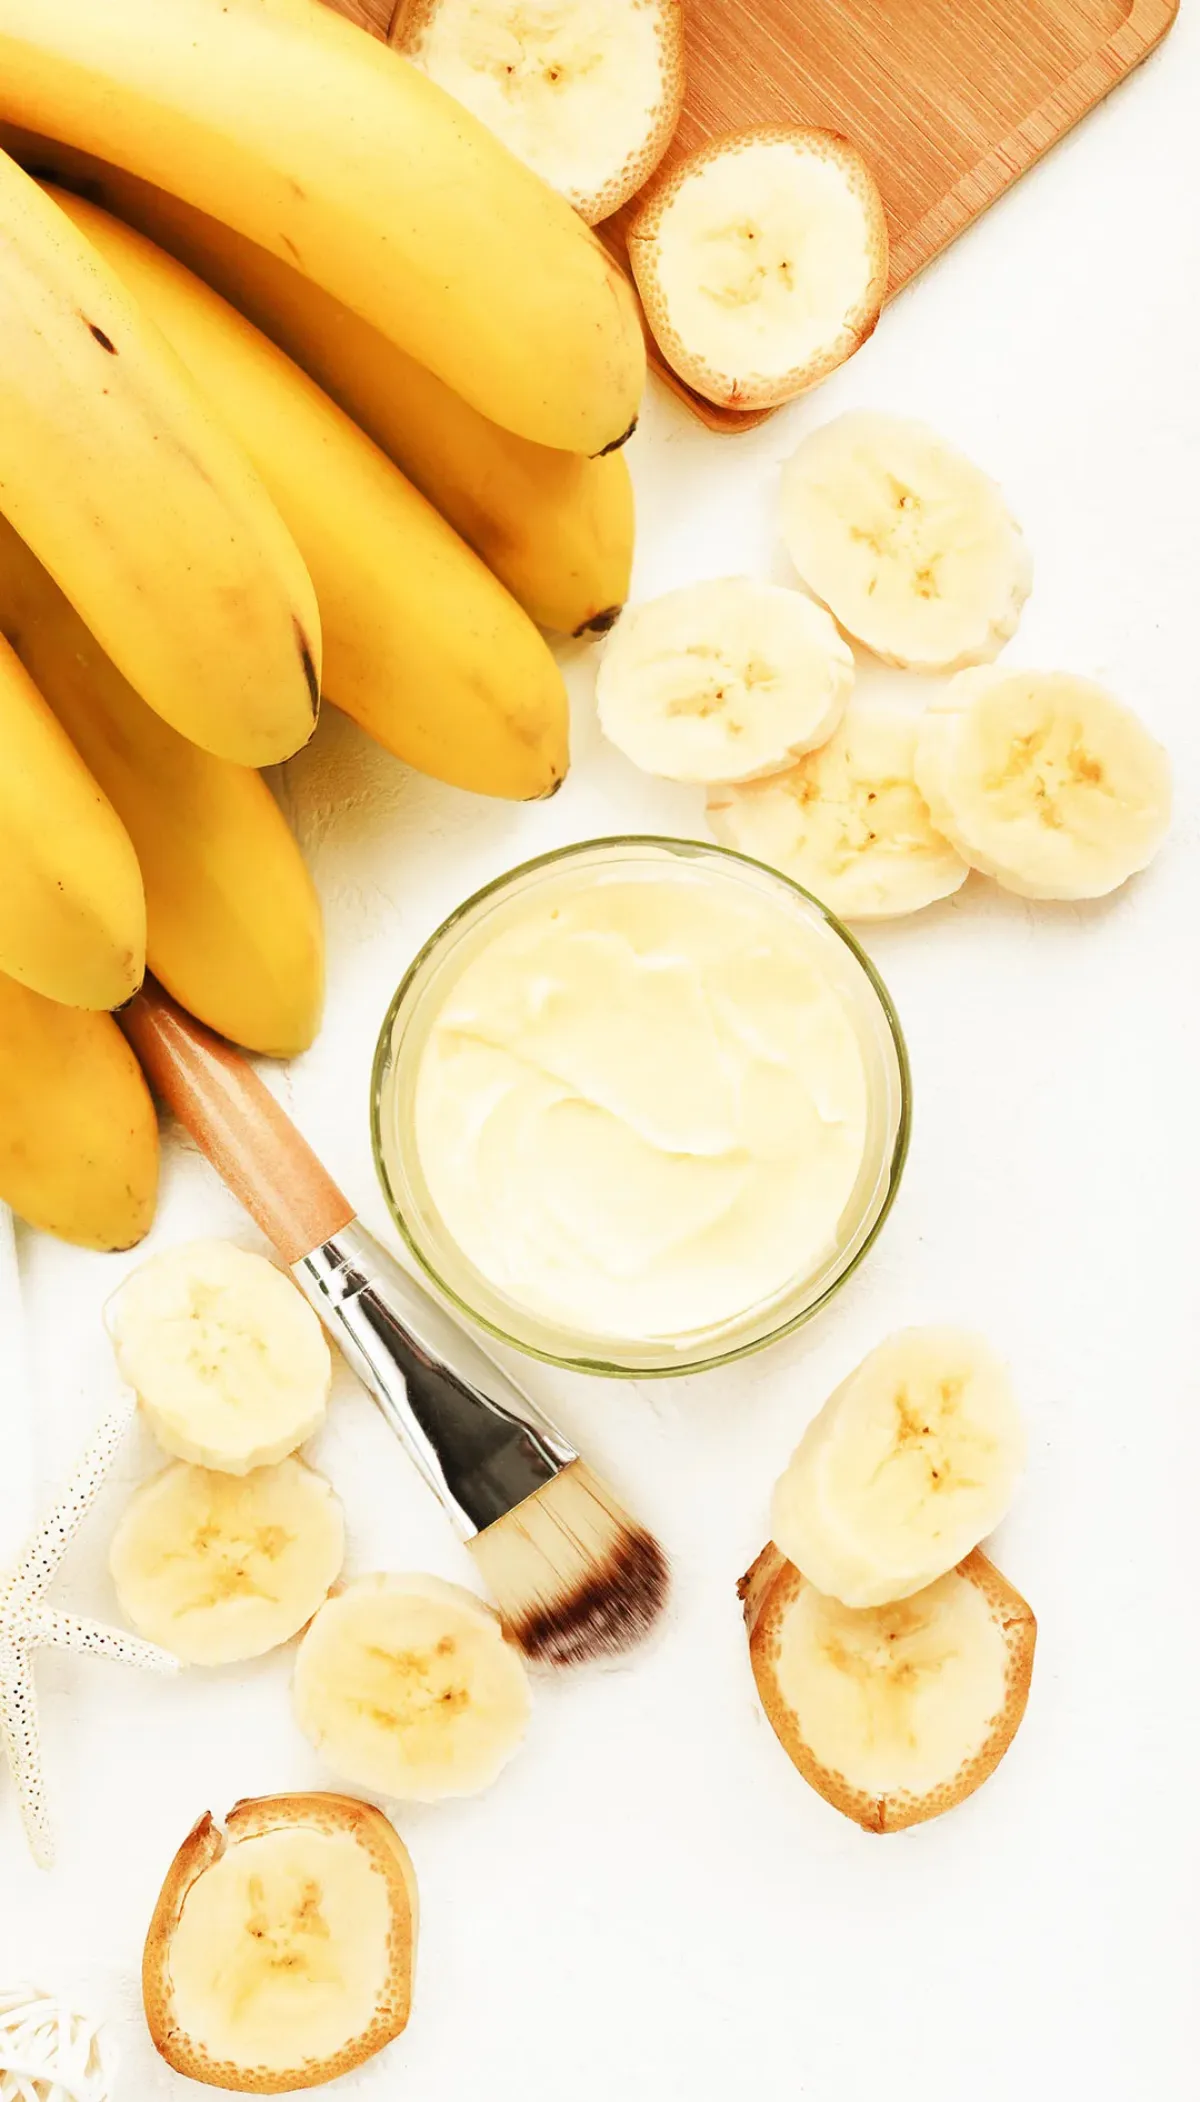 alte bananen nicht wegwerfen haarmaske selber machen mit bananen für gesunde haare